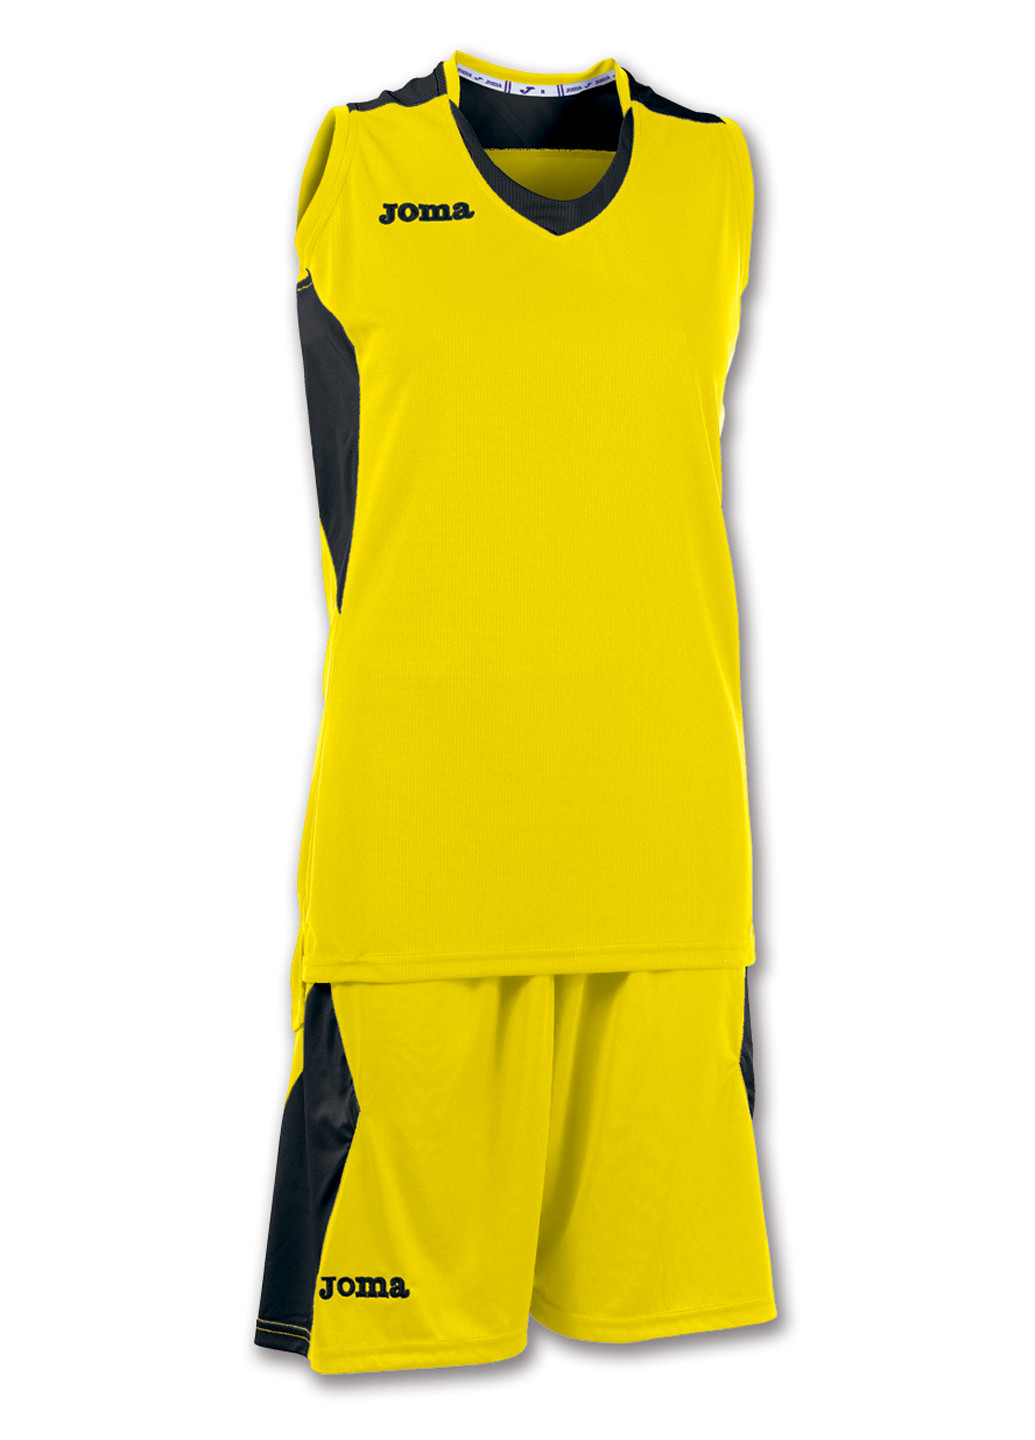 Желтый демисезонный баскетбольная форма (майка, шорты) Joma